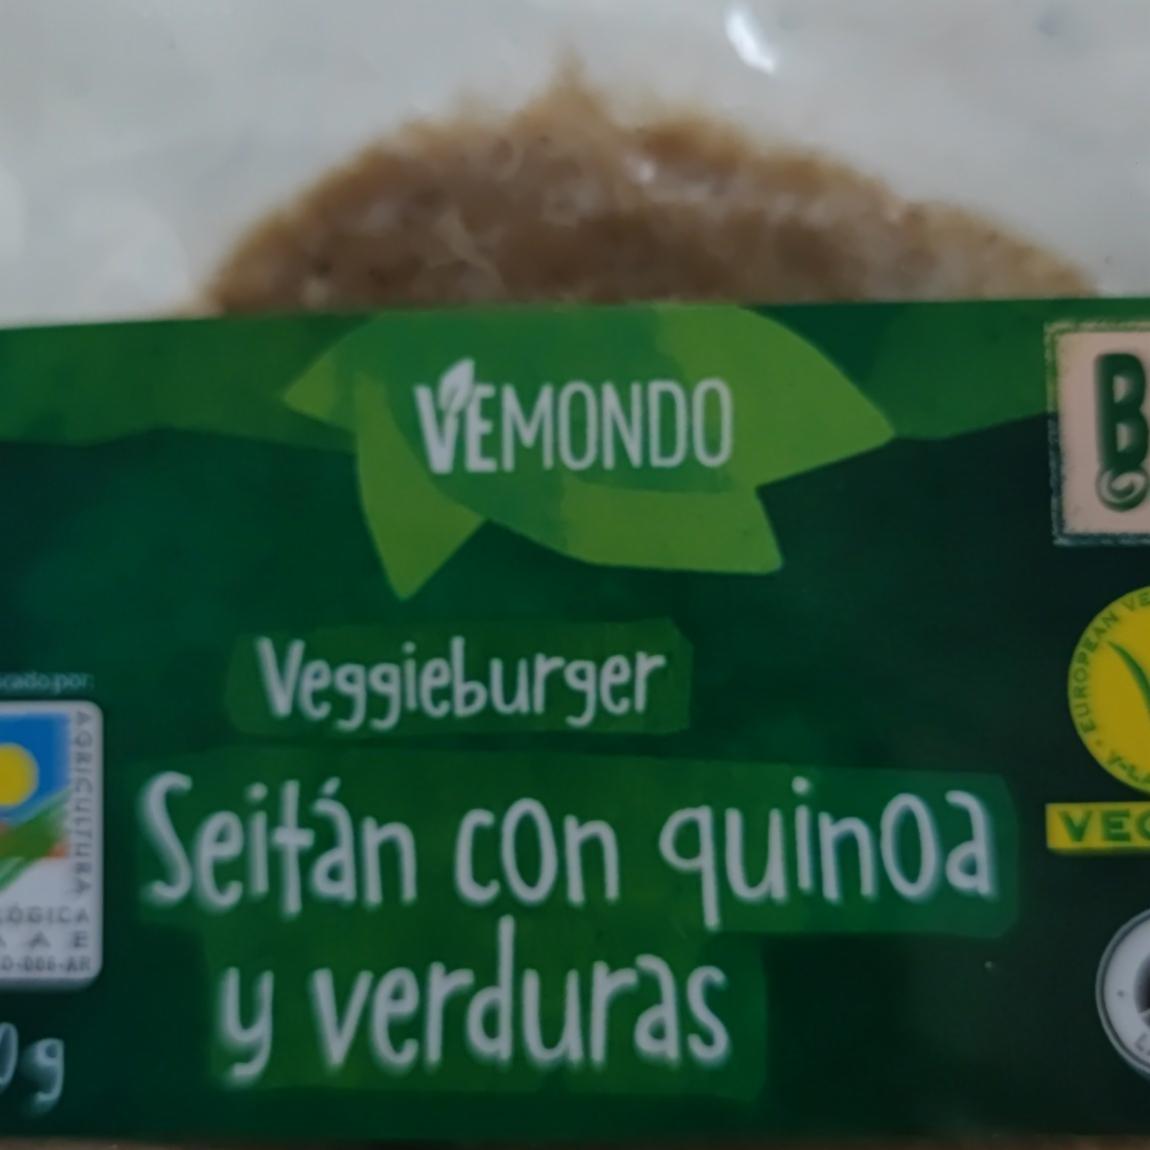 Fotografie - Veggieburger Seitán con quinoa y verduras Vemondo